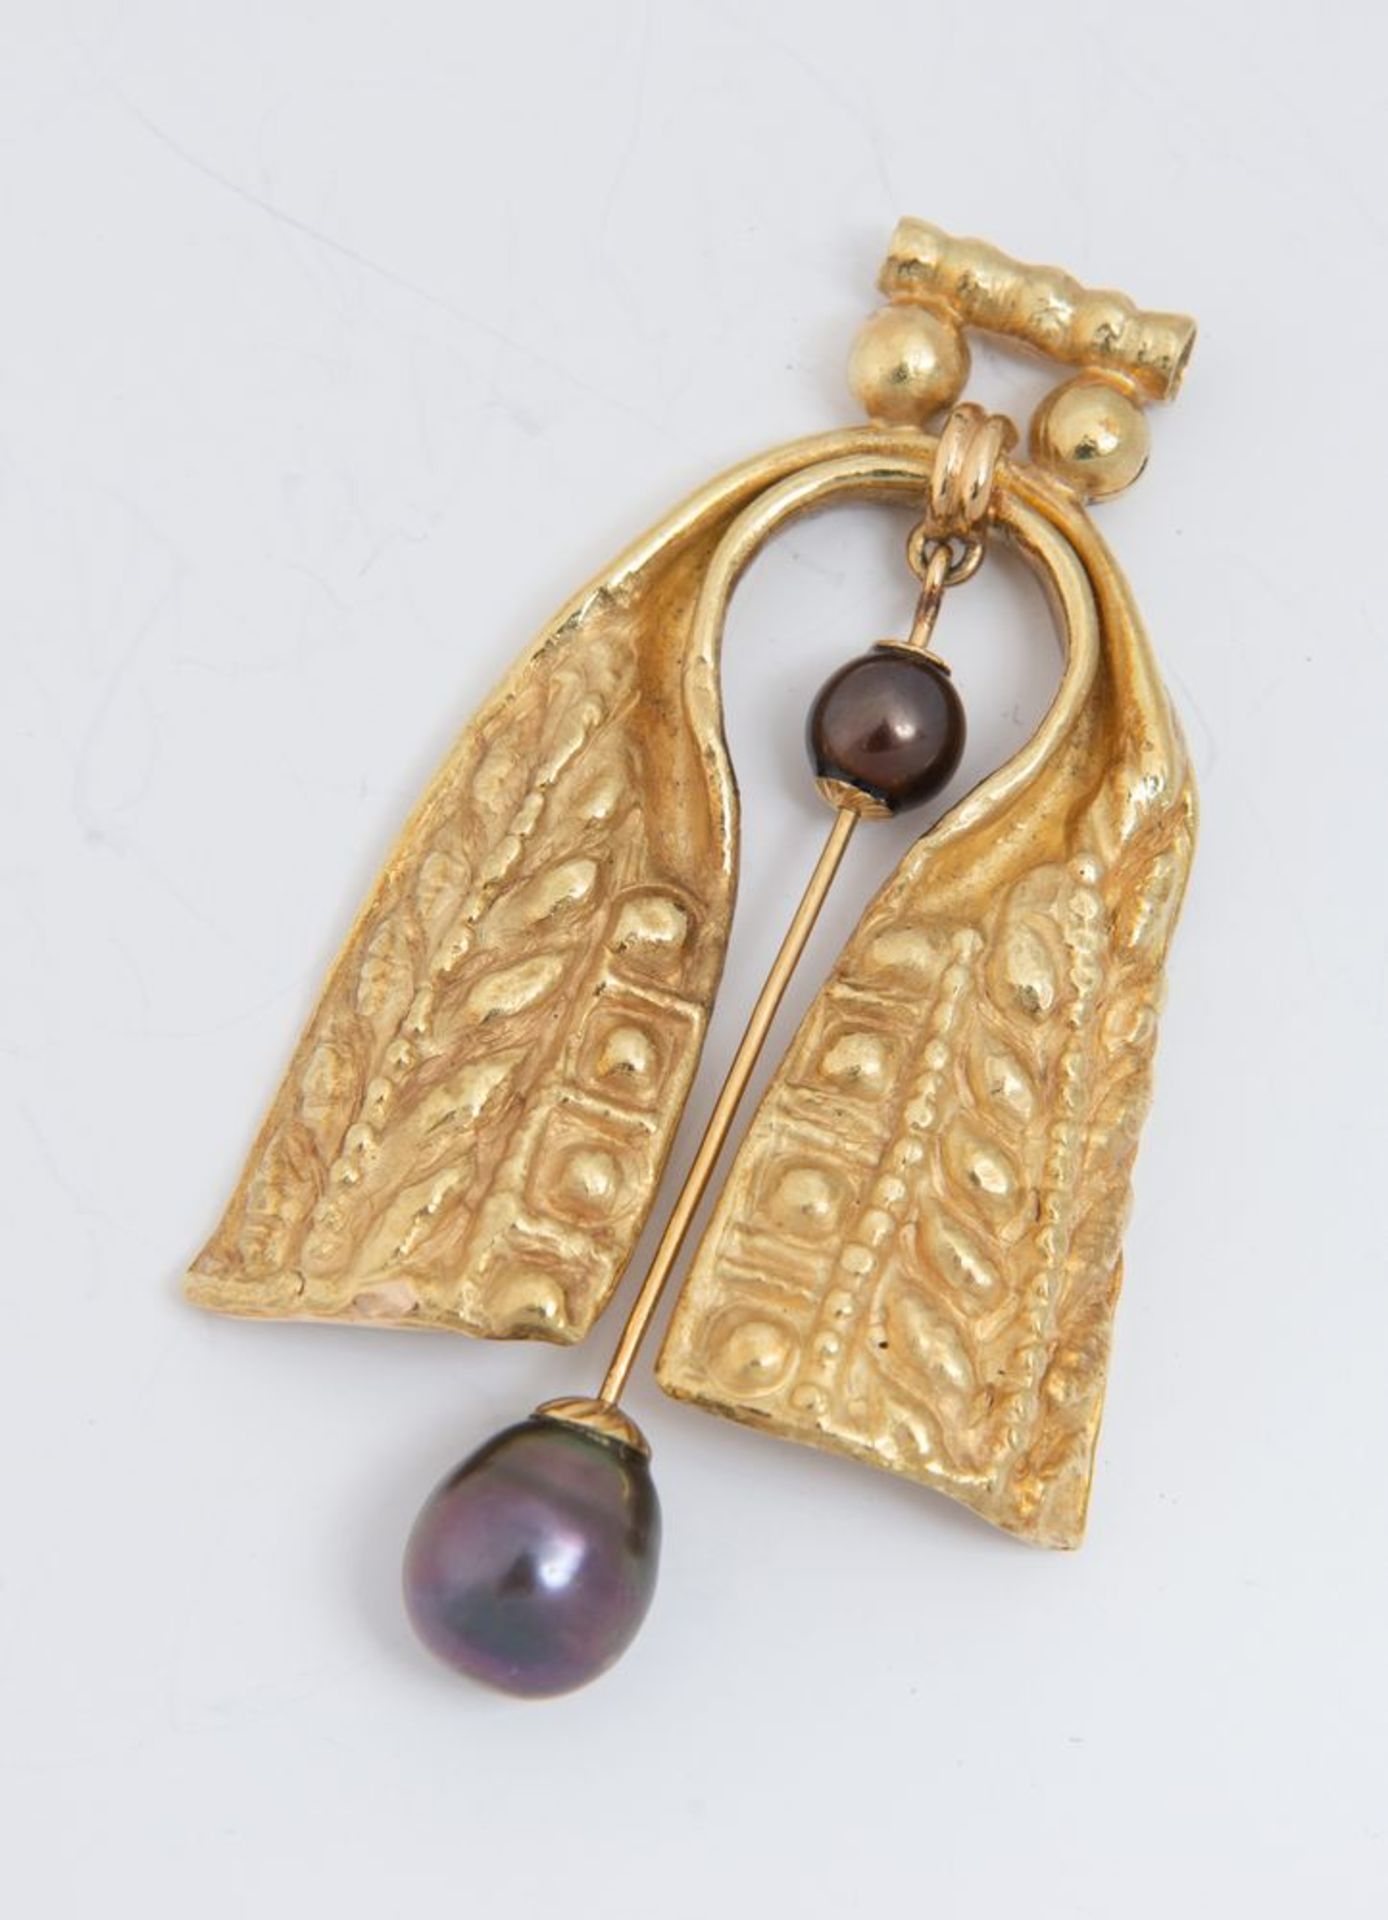 Pendente in oro e perle.
In oro sbalzato e inciso, al centro elemento snodato decorato con due perle - Bild 3 aus 3